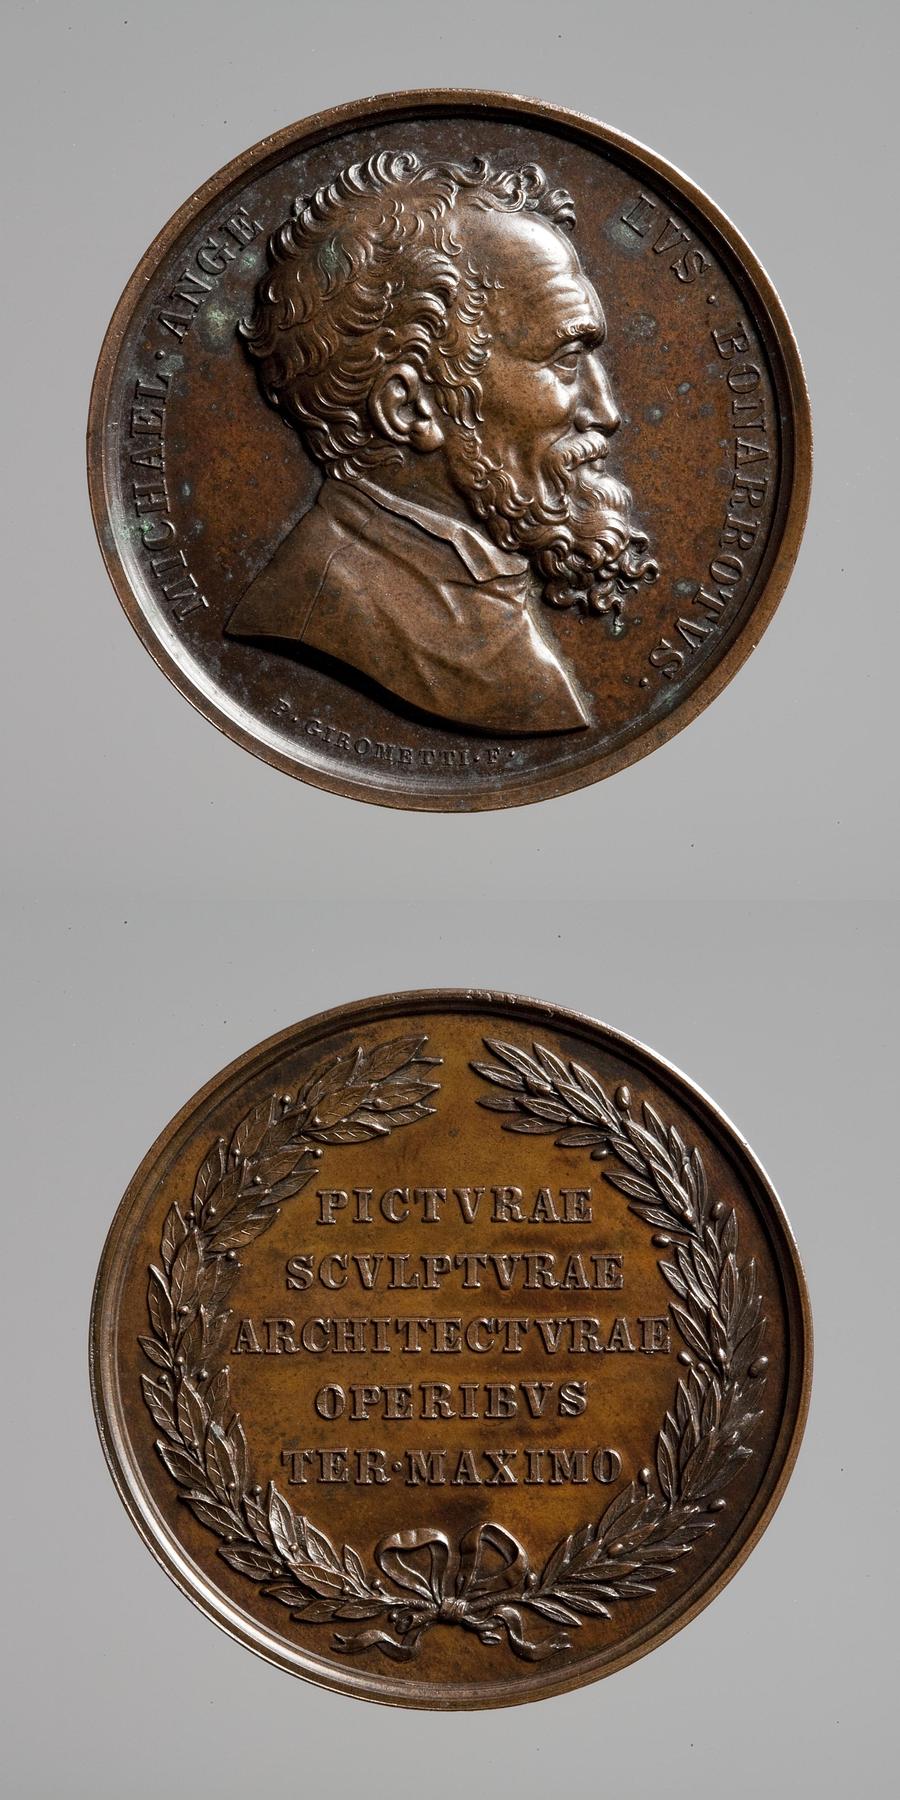 Medaljens forside: Michelangelo. Medaljens bagside: Inskription, krans af olivengren og laurbærgren, F84